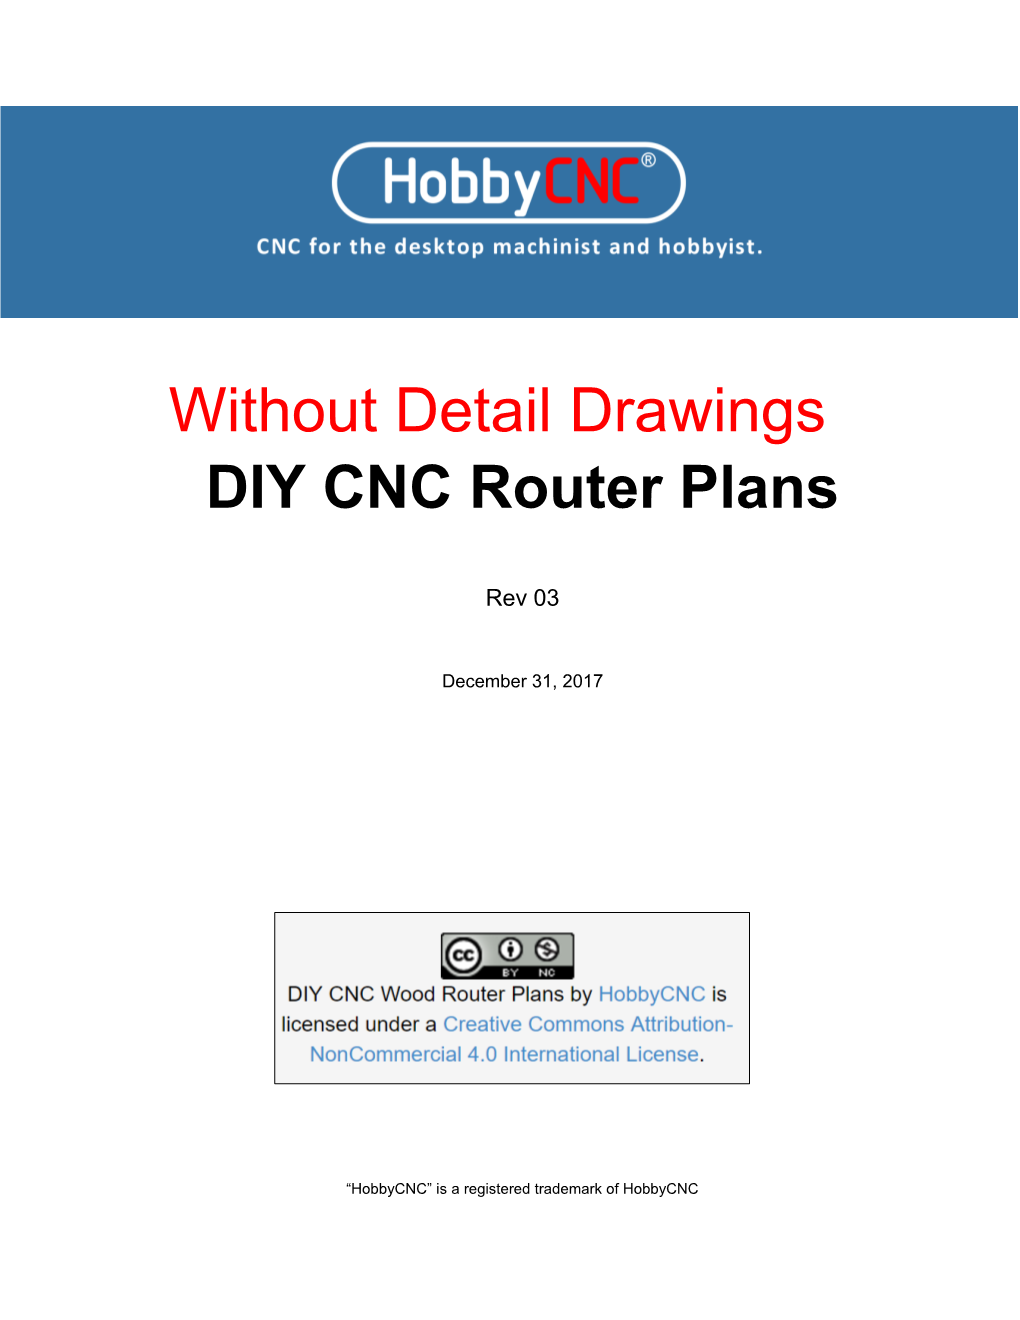 DIY CNC Router Plans